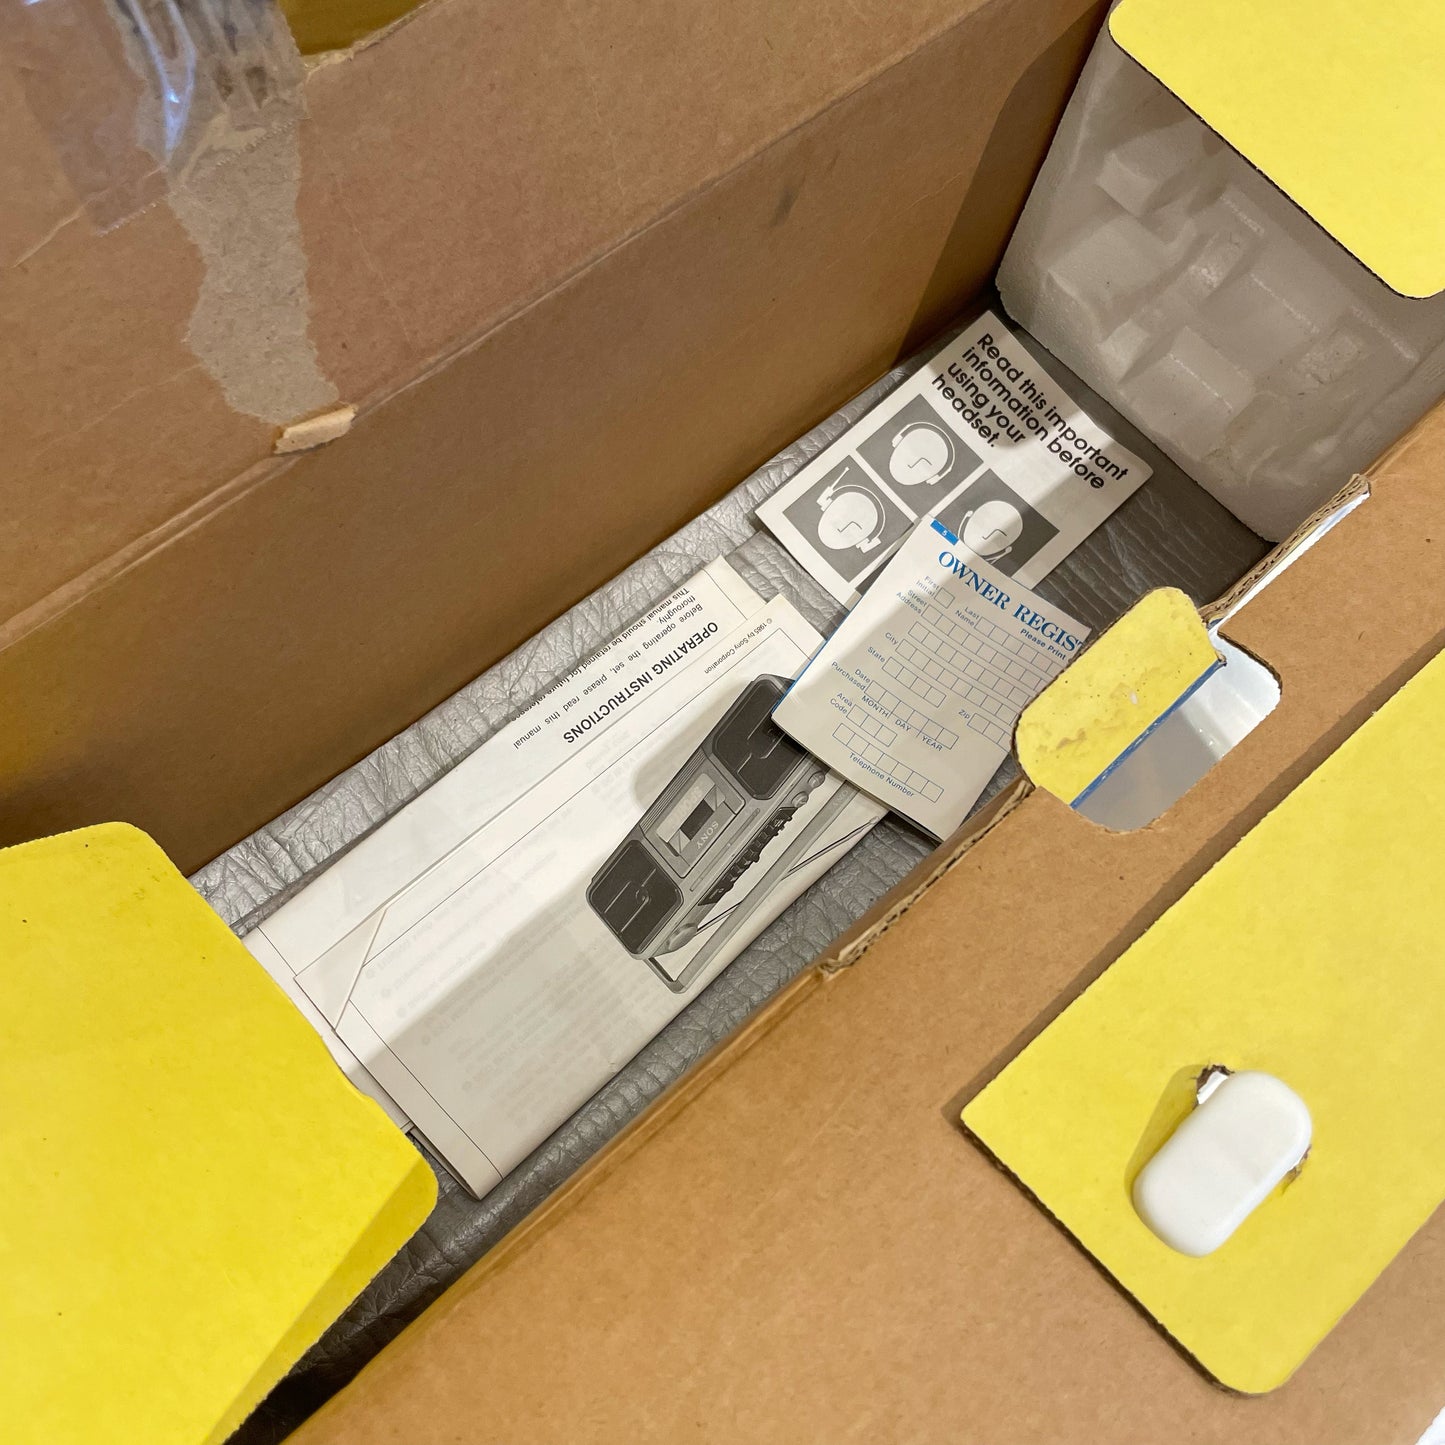 1985 ラジカセ SONY SPORTS ソニースポーツ Boombox CFS-950 IN BOX 可動品 箱付き ヴィンテージ